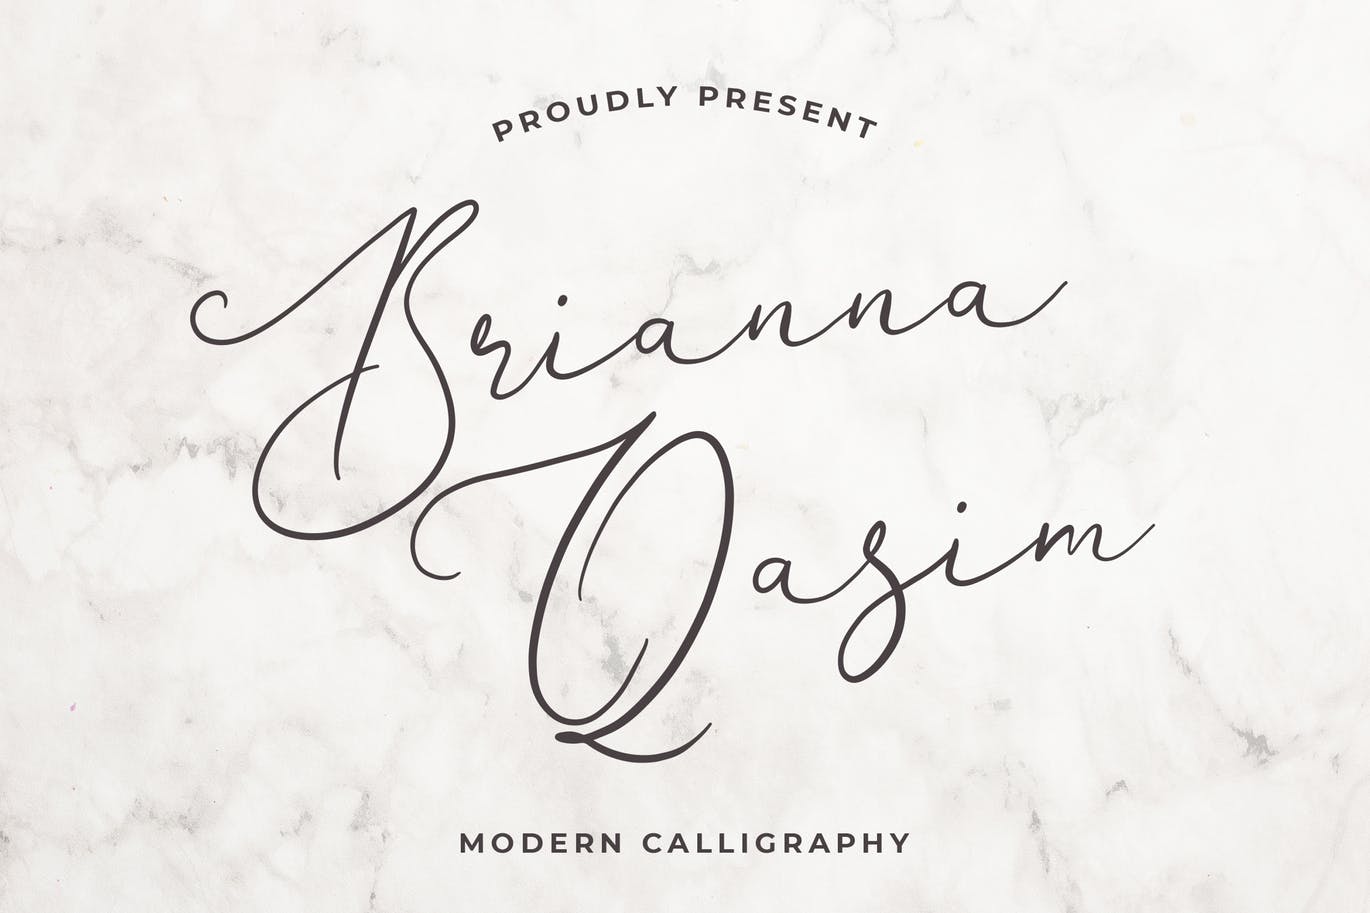 独特手写连笔书法英文字体大洋岛精选 Brianna Qasim Beautiful Calligraphy Font插图